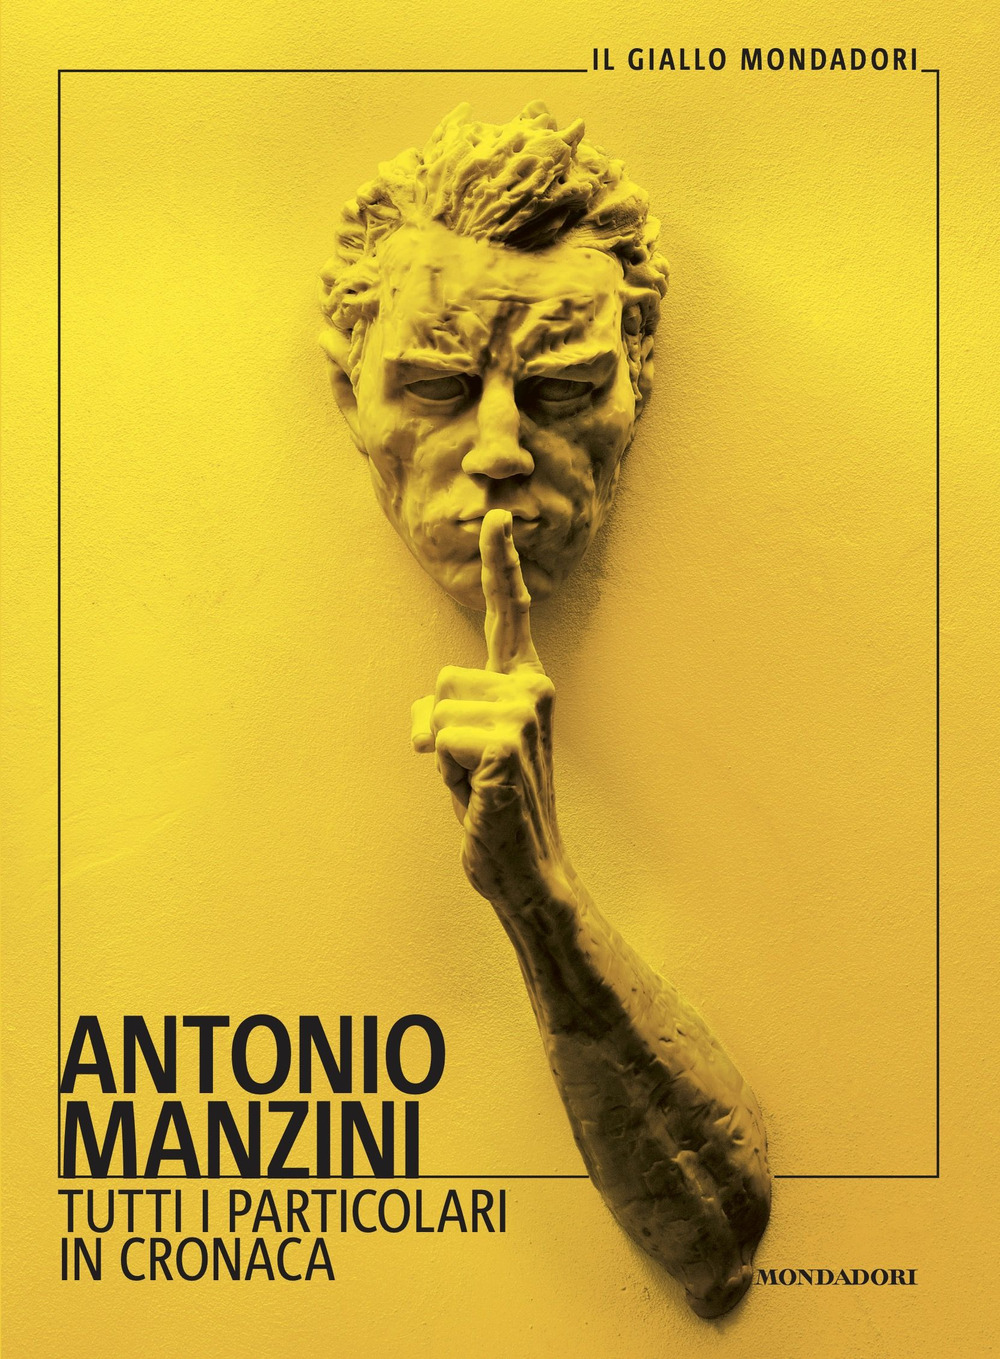 Classifica dei libri più venduti. Al primo posto compare Antonio Manzini